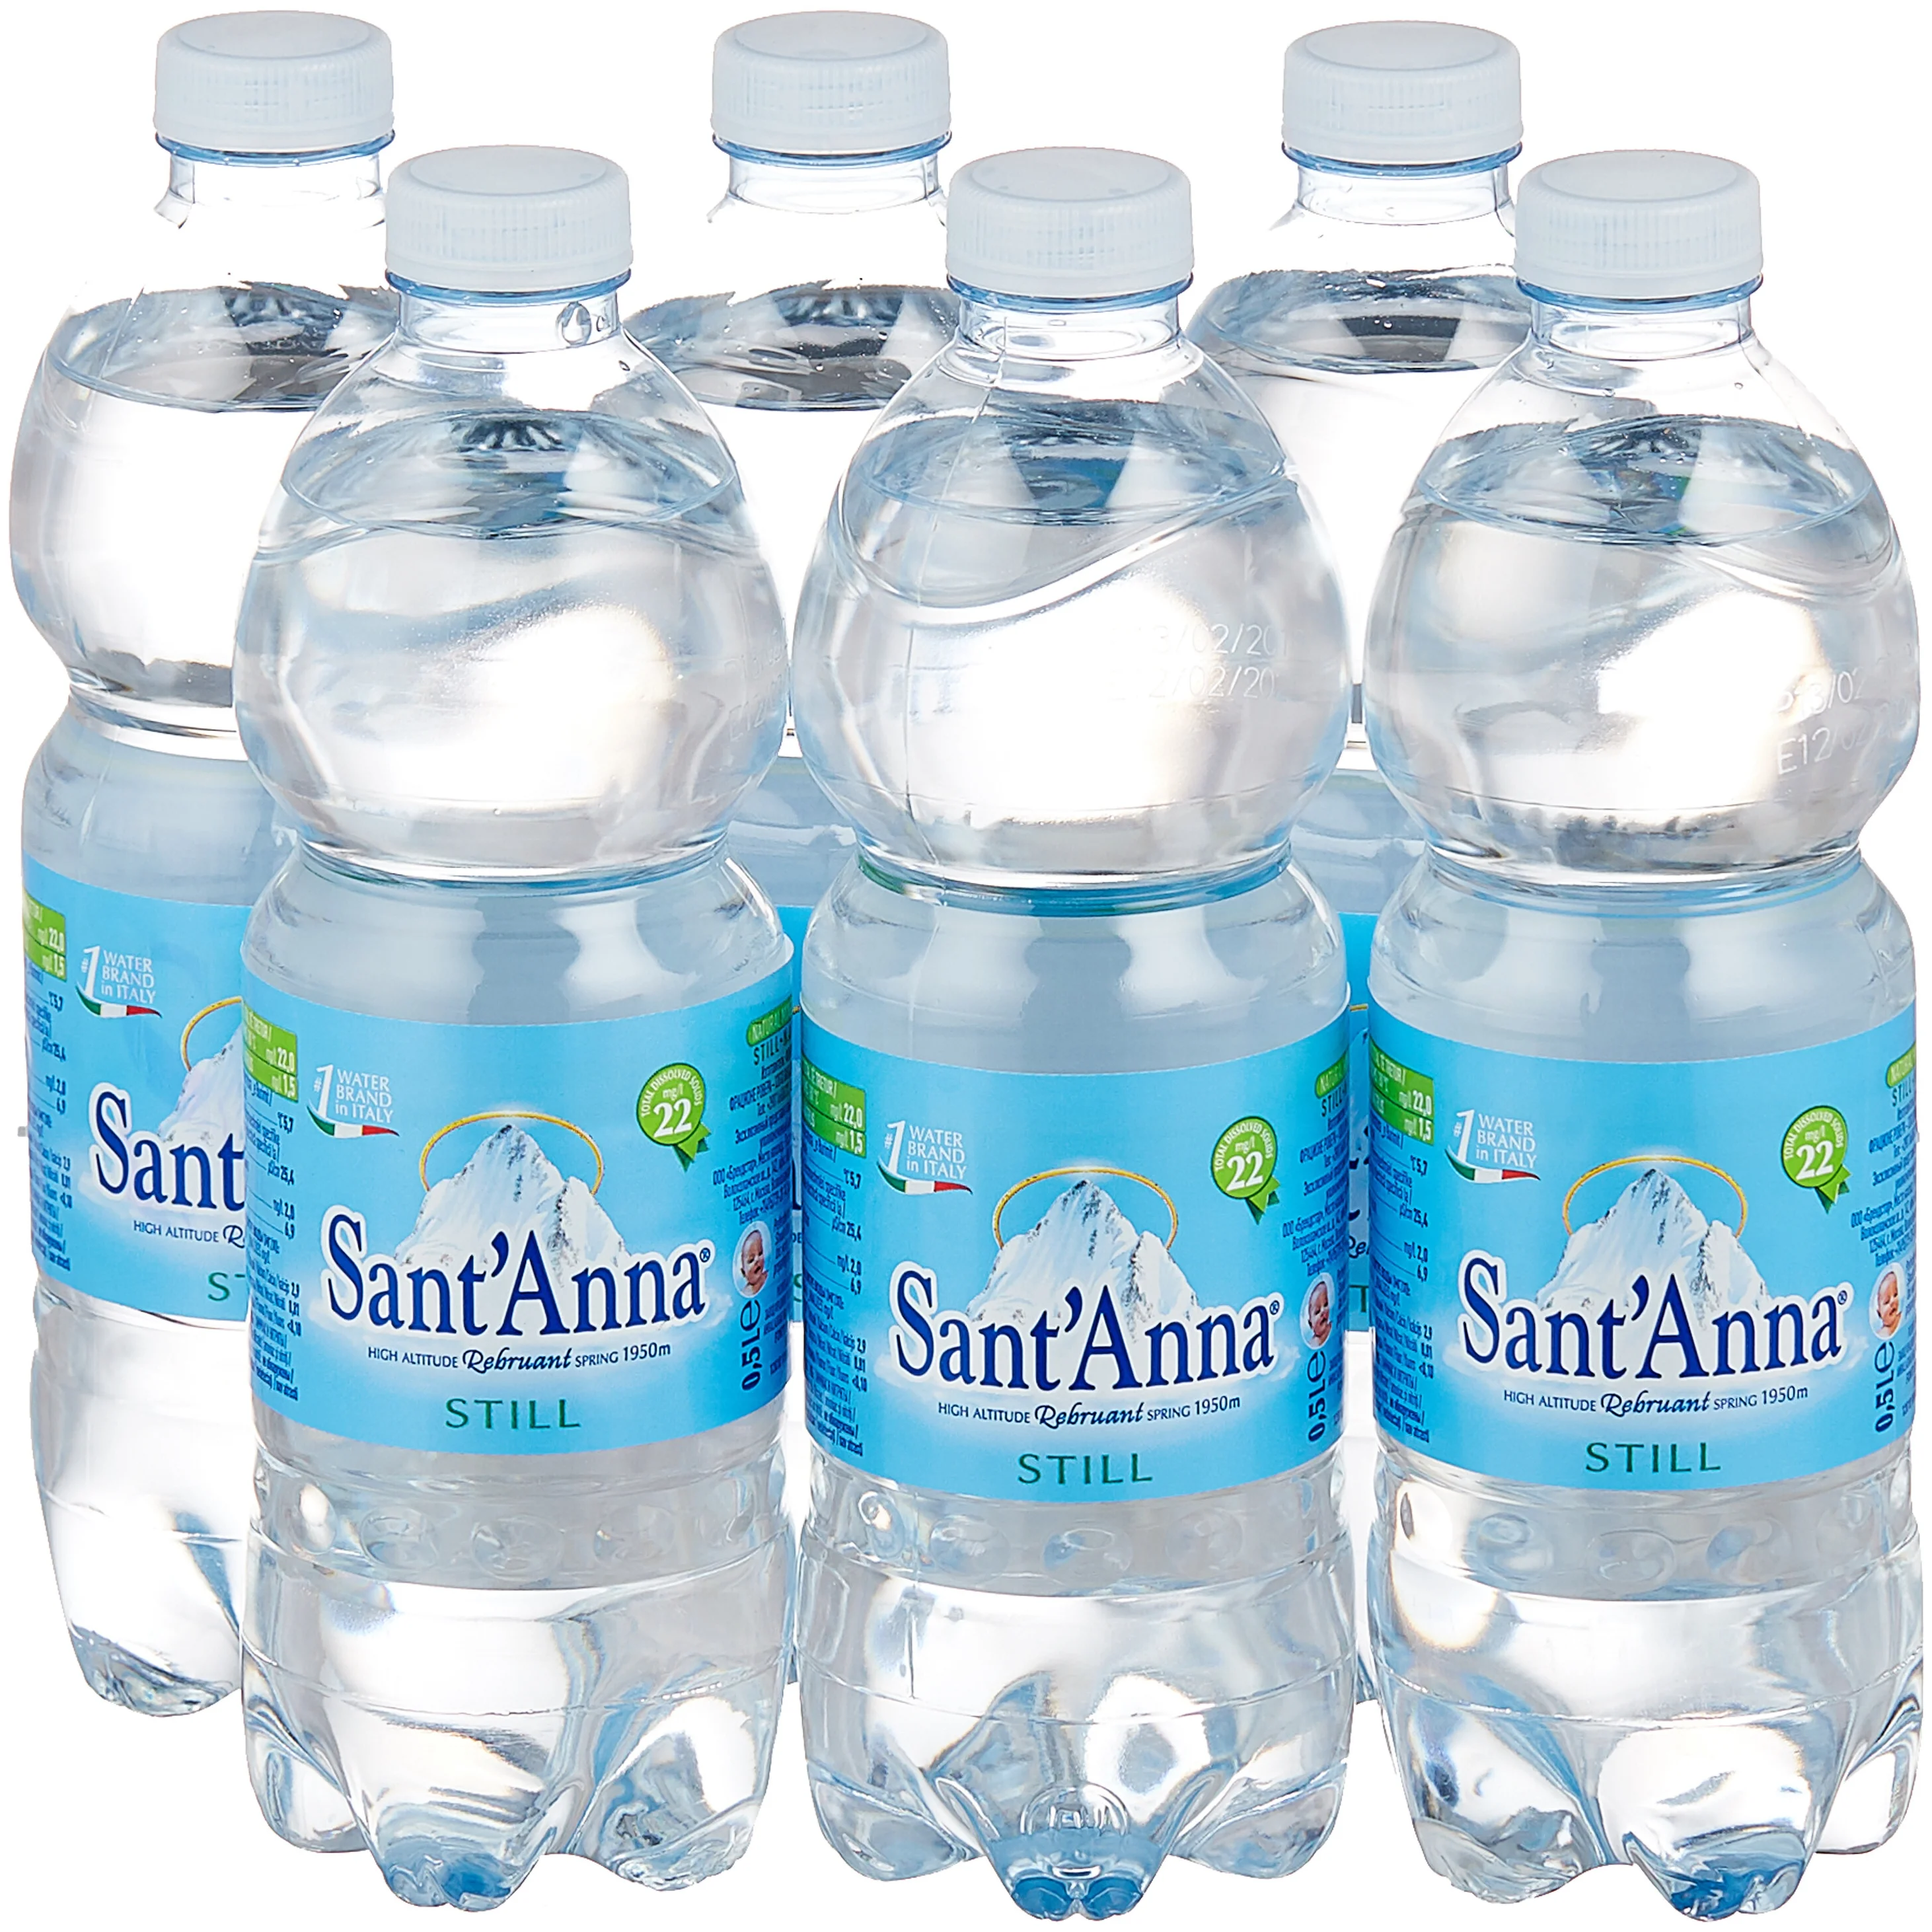 Вода Sant'Anna, источник Ребруан, минеральная, природная, столовая, негазированная, 0,5 л